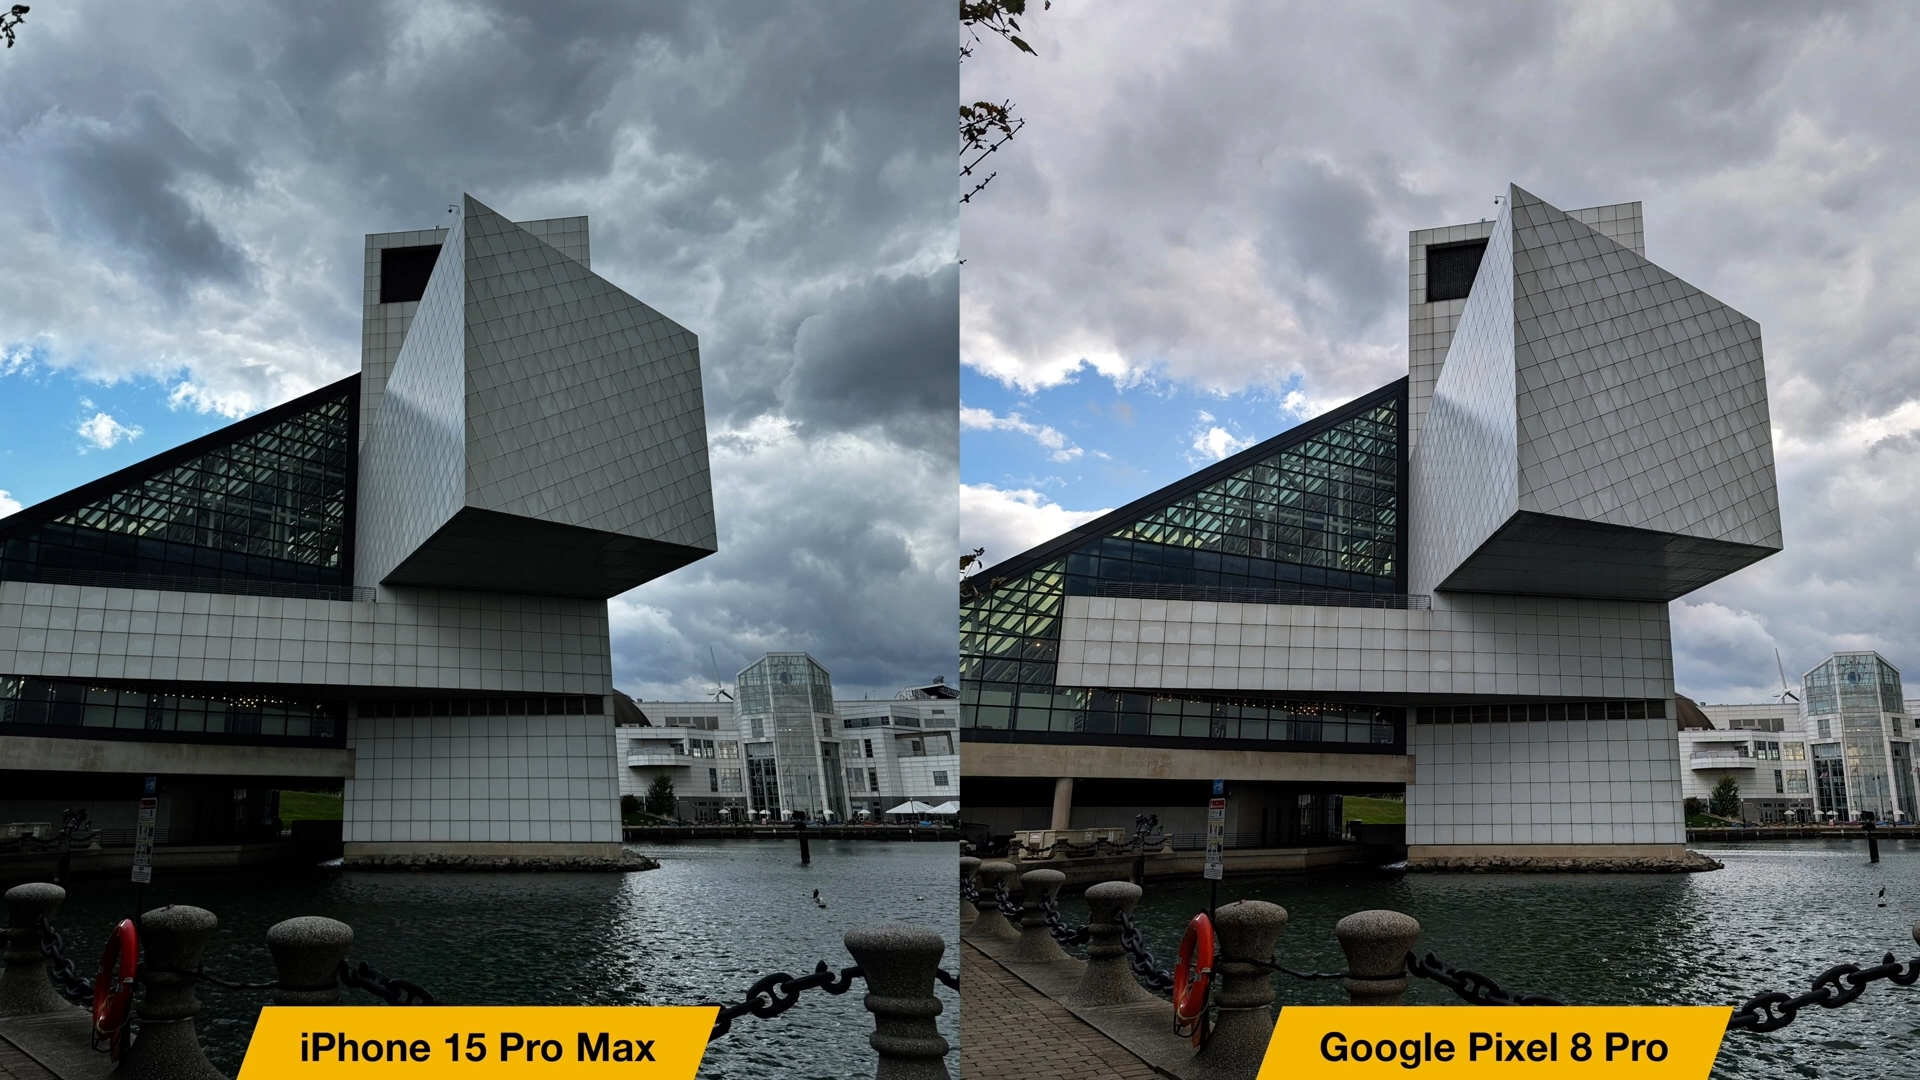 Van iPhoneIslam.com, een vergelijking tussen de iPhone 15 Pro Max-camera en de Google Pixel 8 Pro-camera.